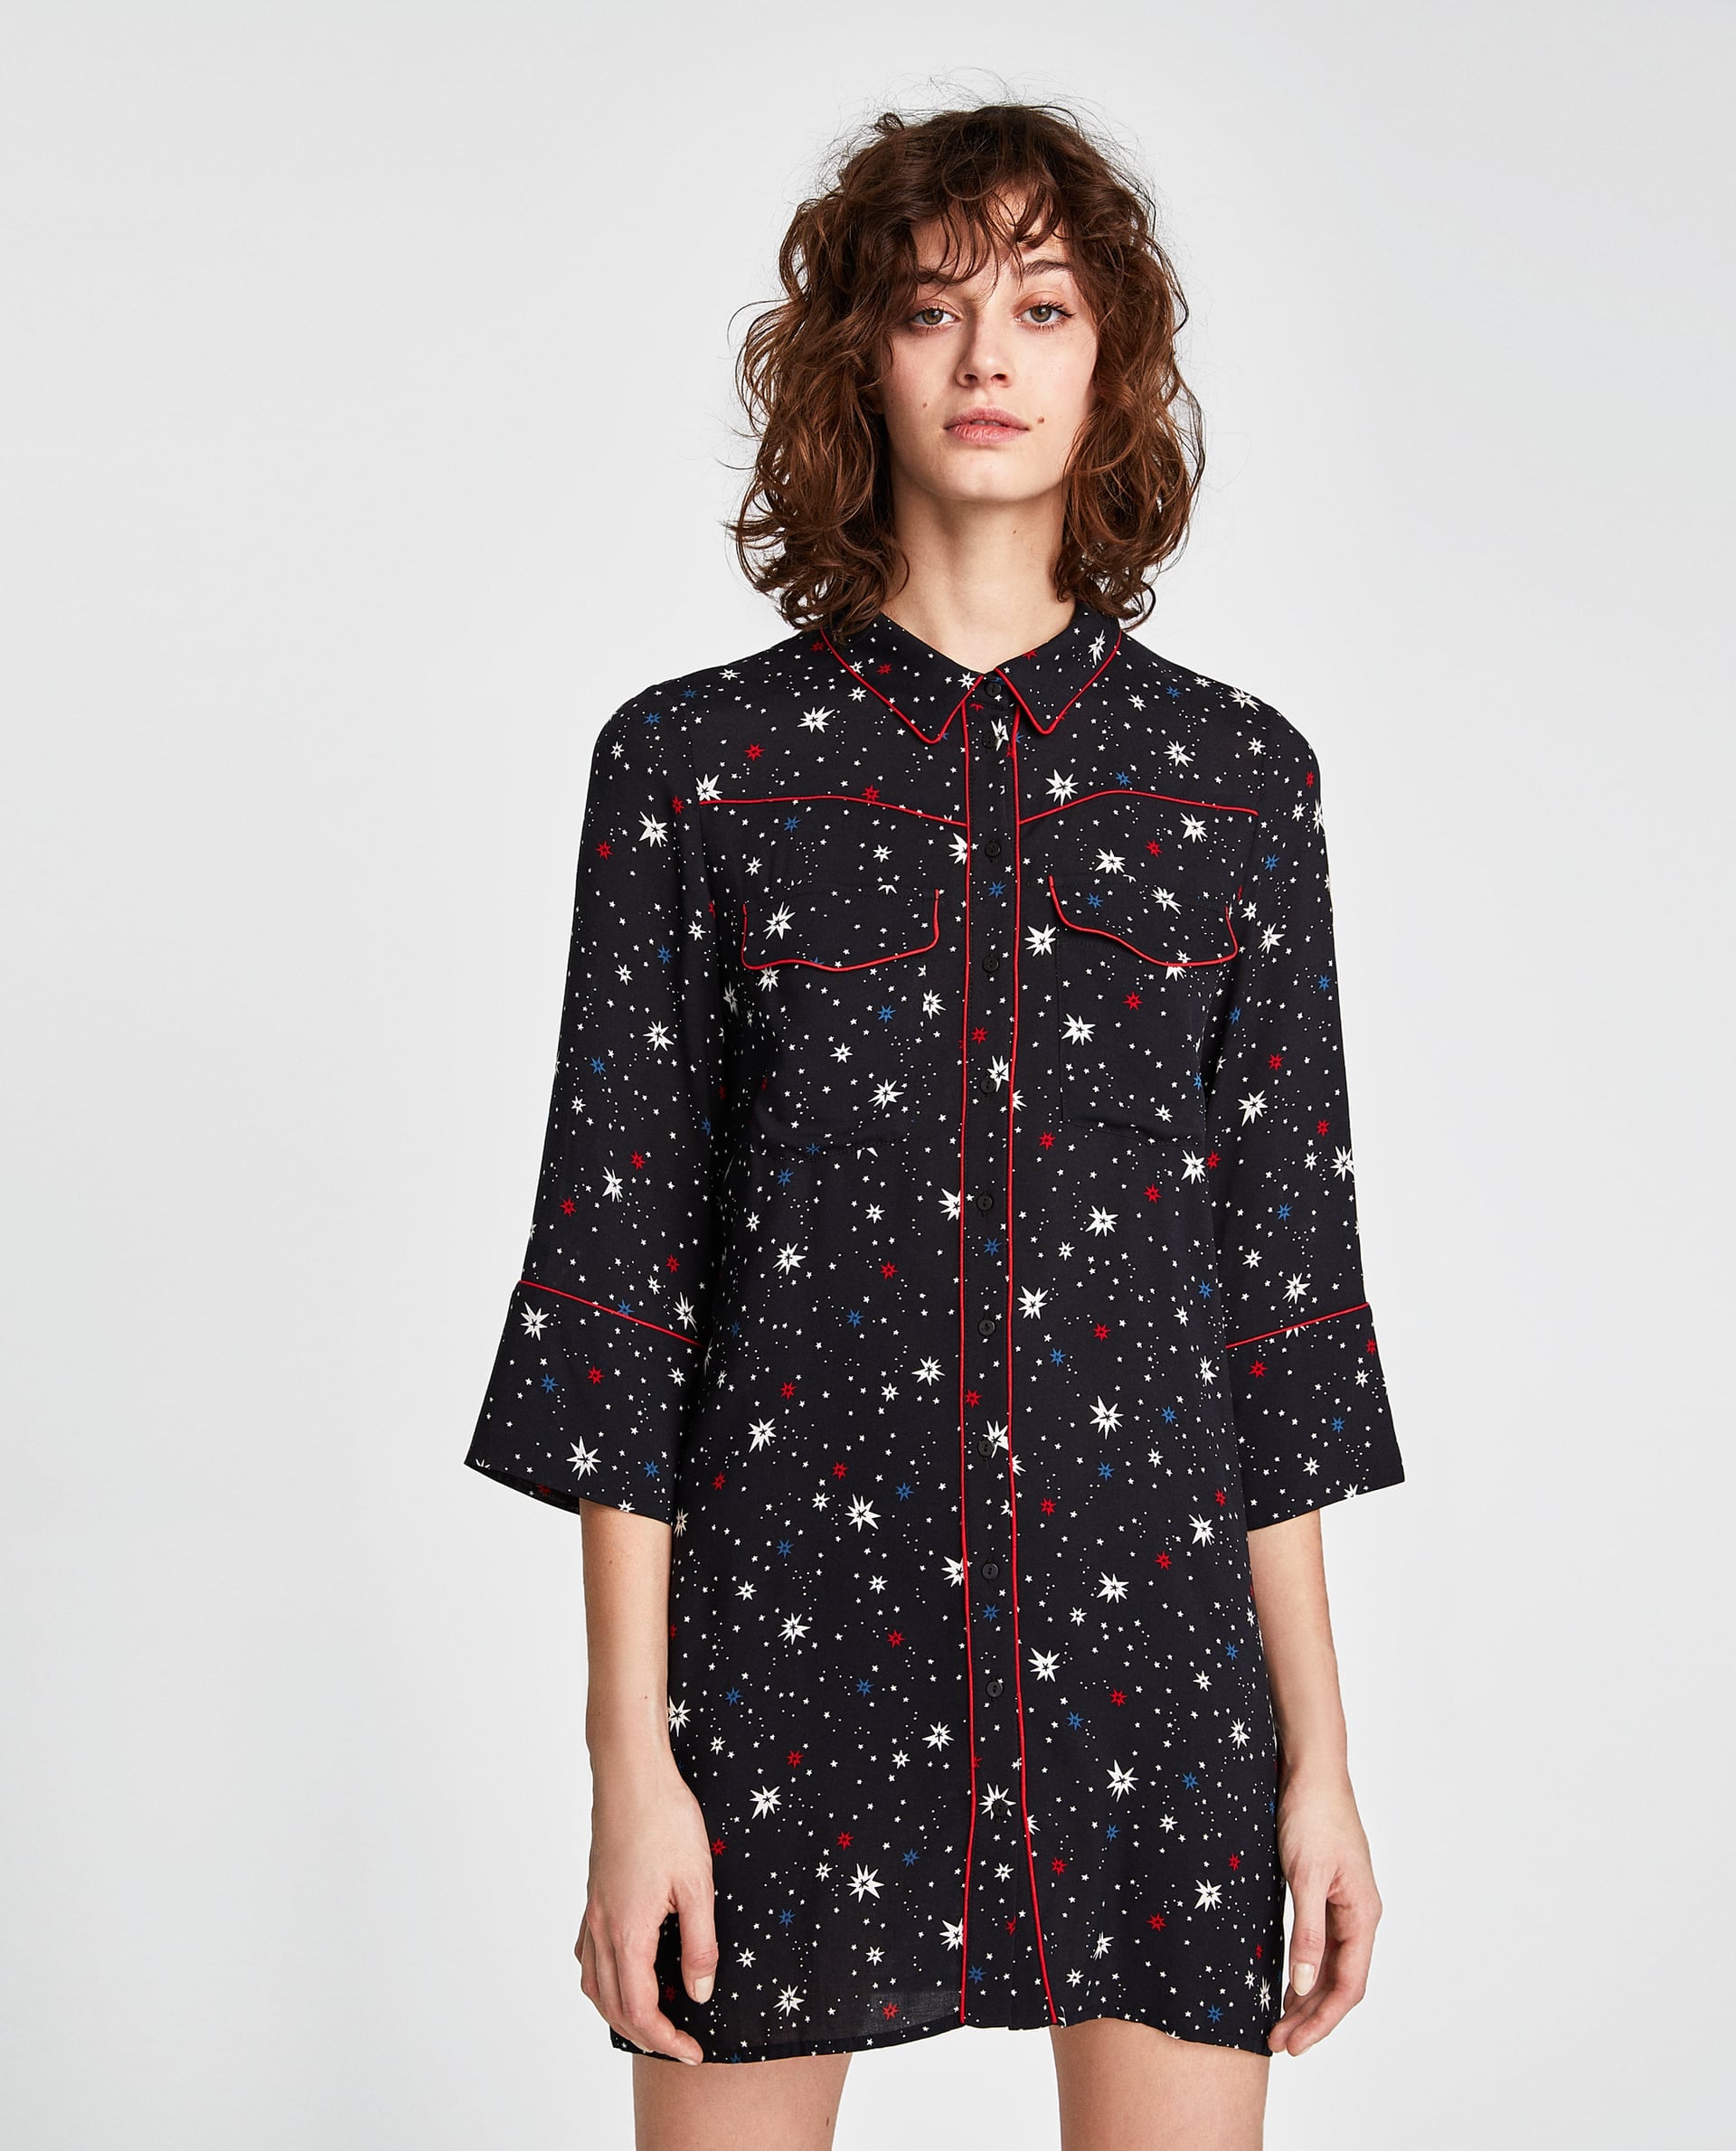 Zara Star Mini Dress | It's Like All 